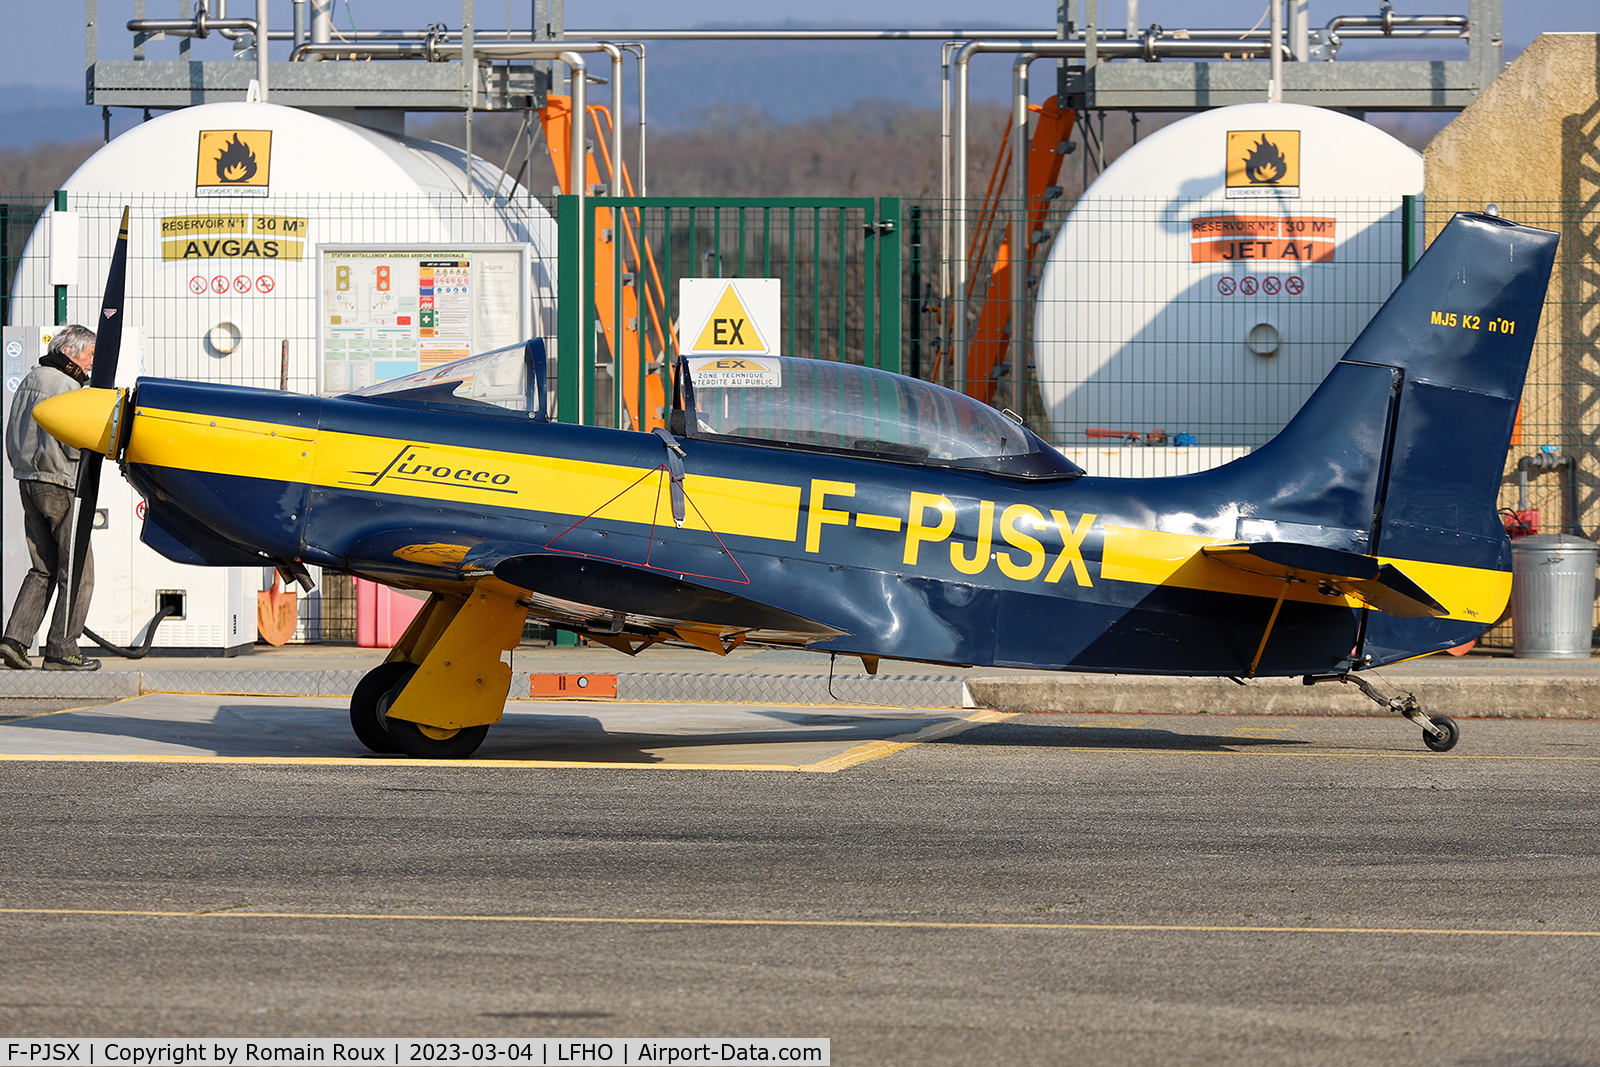 F-PJSX, Jurca MJ-5 K2 Sirocco C/N 01, Parked